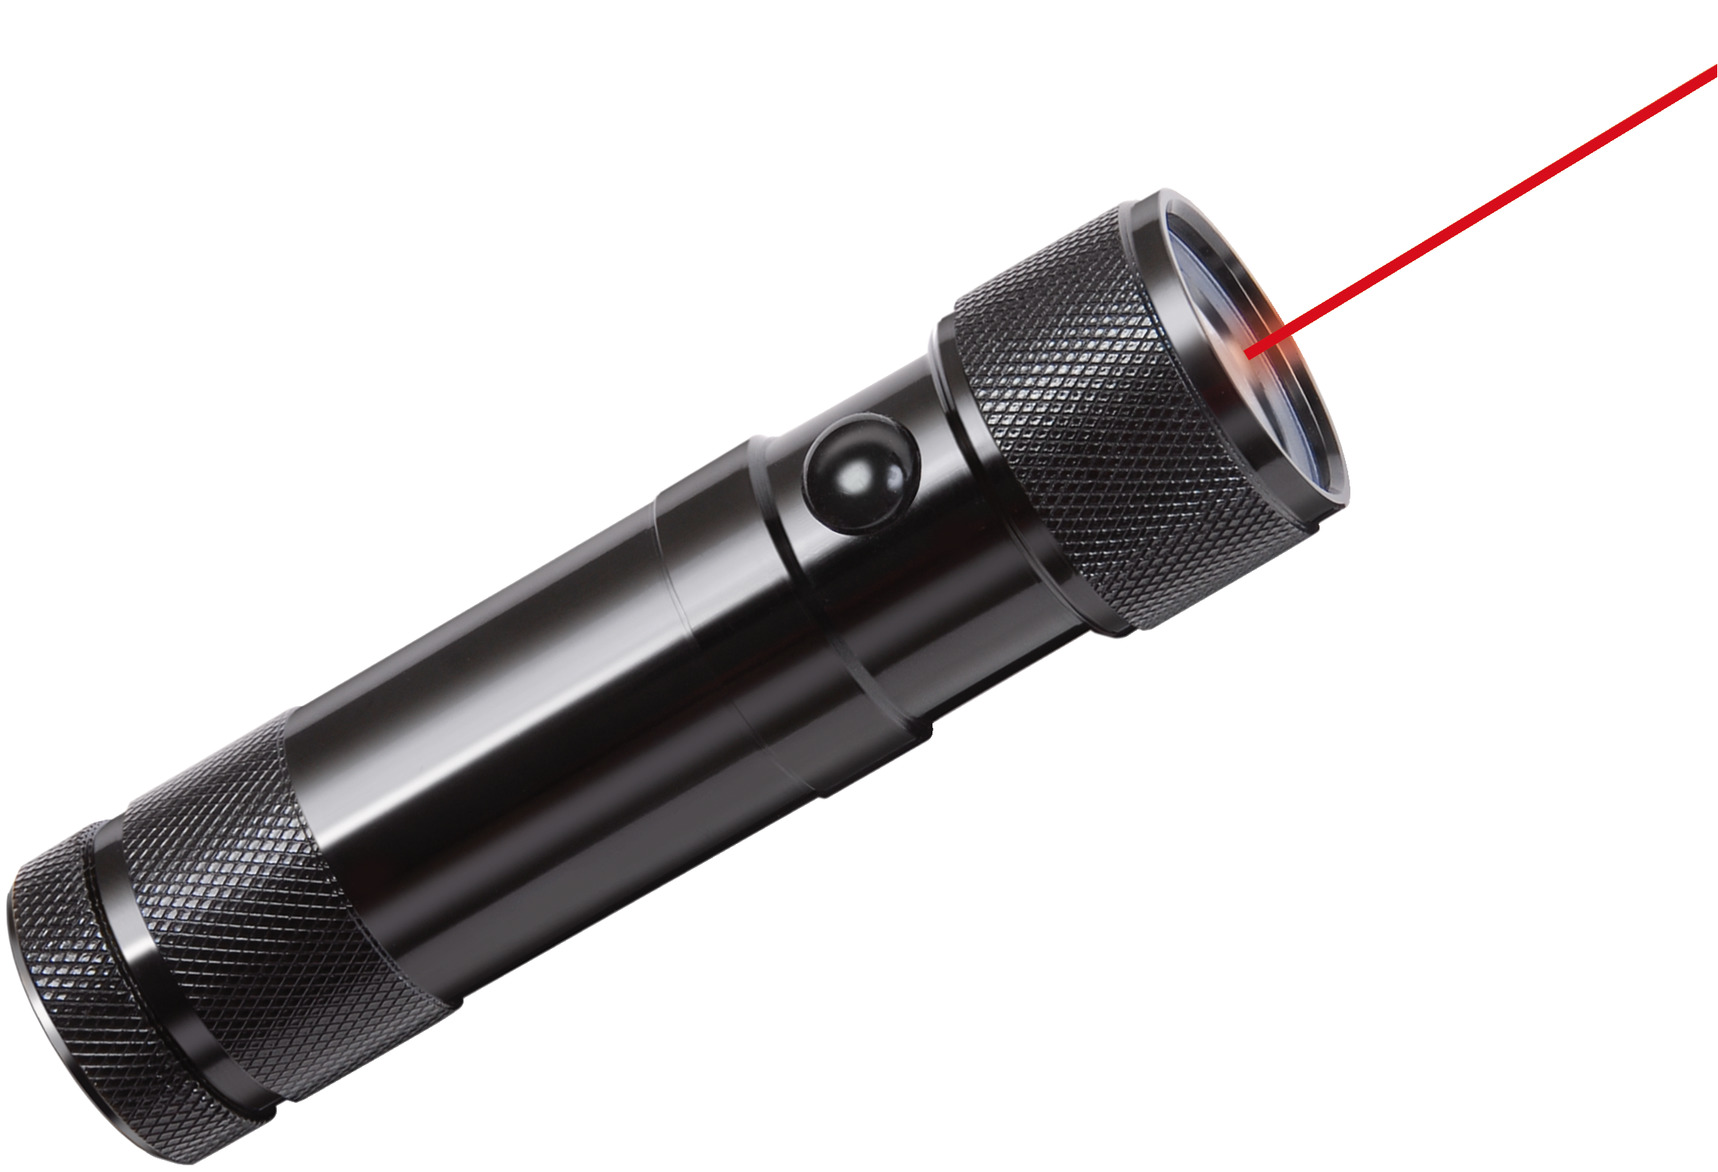 Torche Laser blanche 9900LM lampe de poche plus puissante au monde